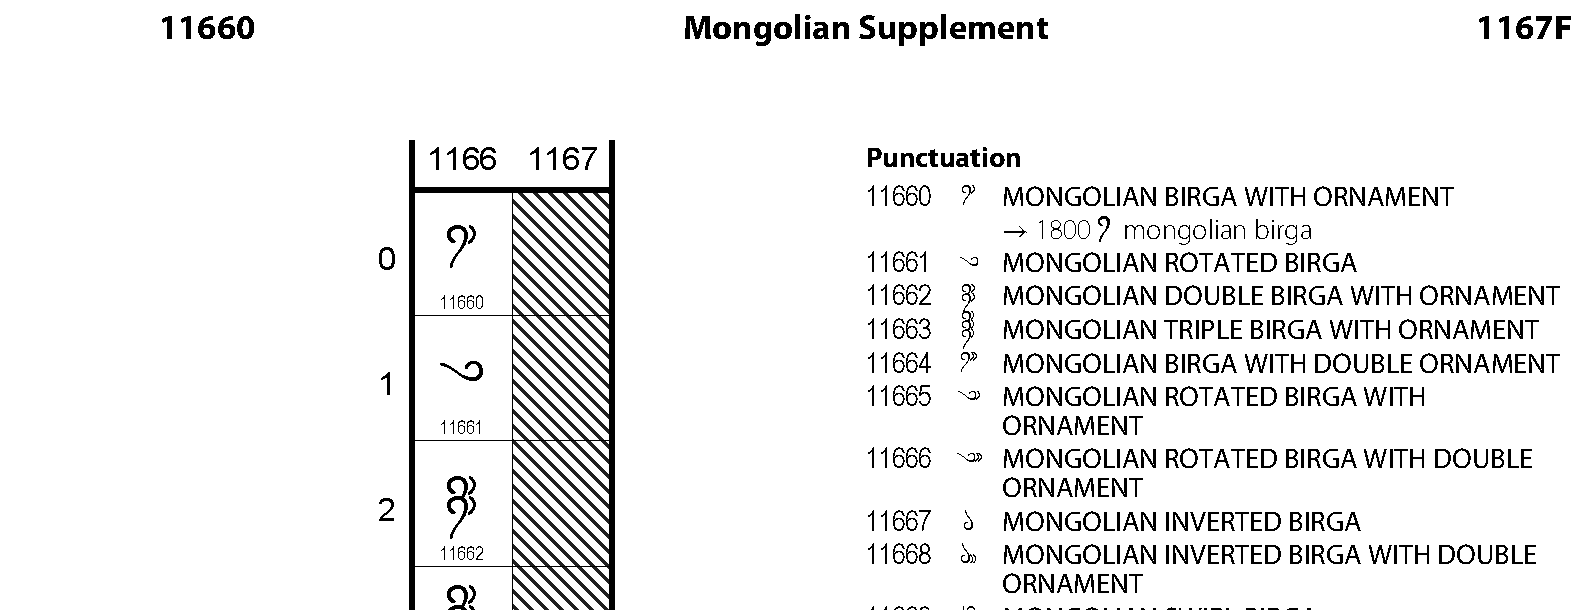 Unicode - Mongolian Supplement